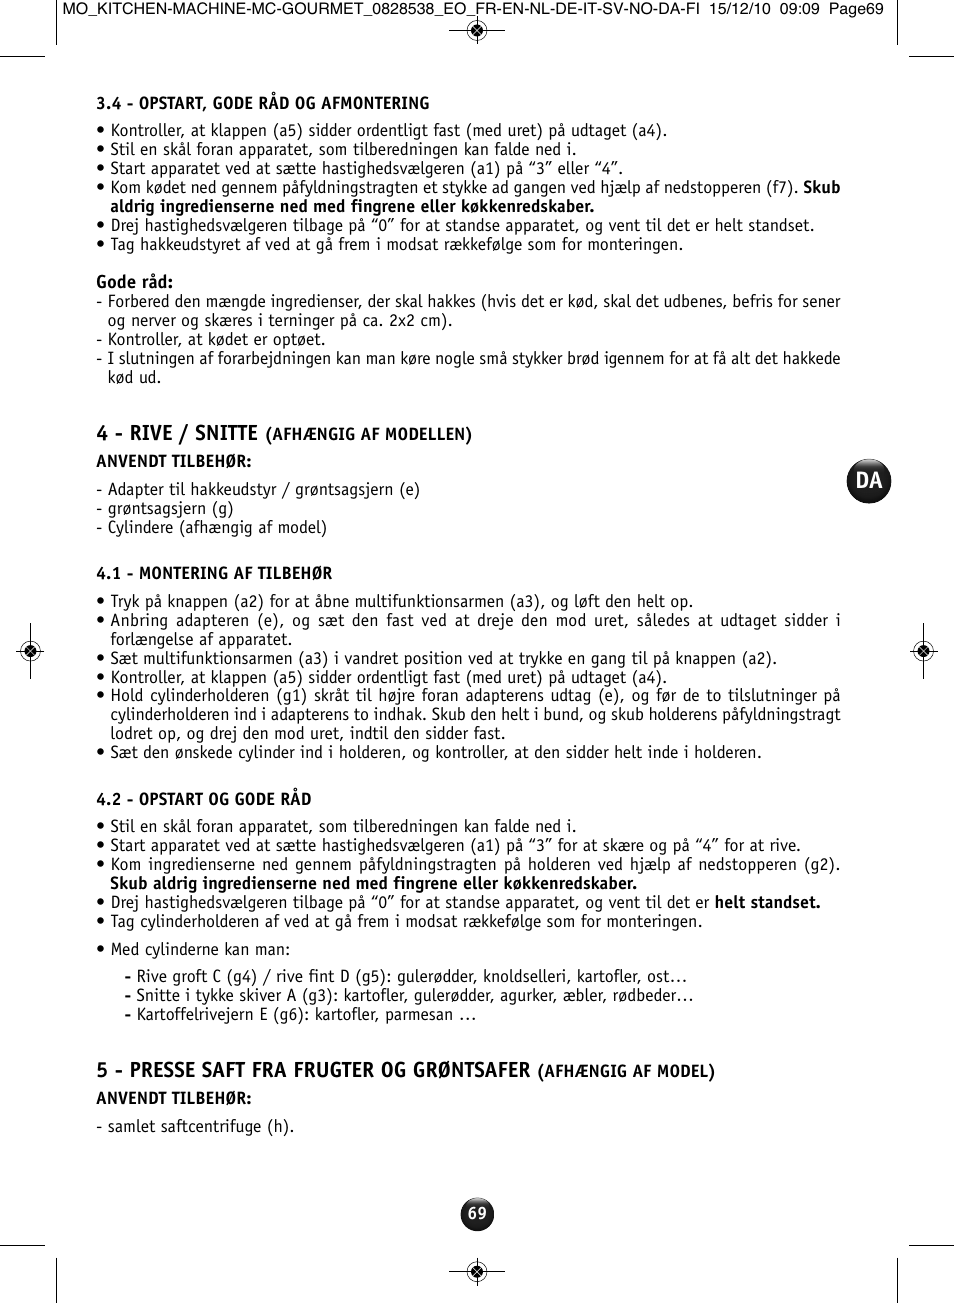 4 - rive / snitte, 5 - presse saft fra frugter og grøntsafer | Moulinex  MASTERCHEF GOURMET QA402G User Manual | Page 65 / 82